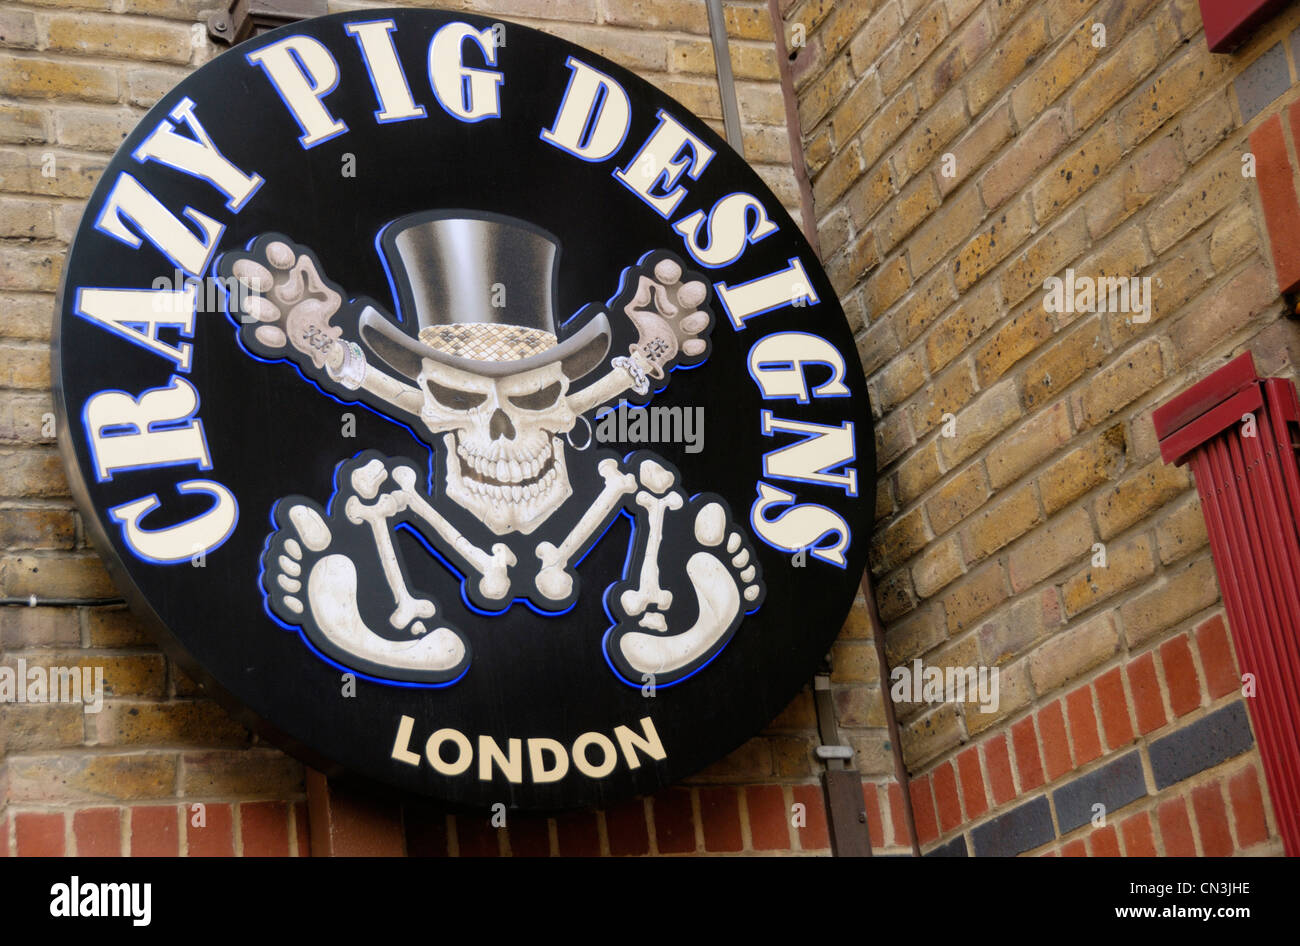 Verrücktes Schwein Designs alternative Schmuck Shop Zeichen-Logo, Covent Garden, London, UK Stockfoto